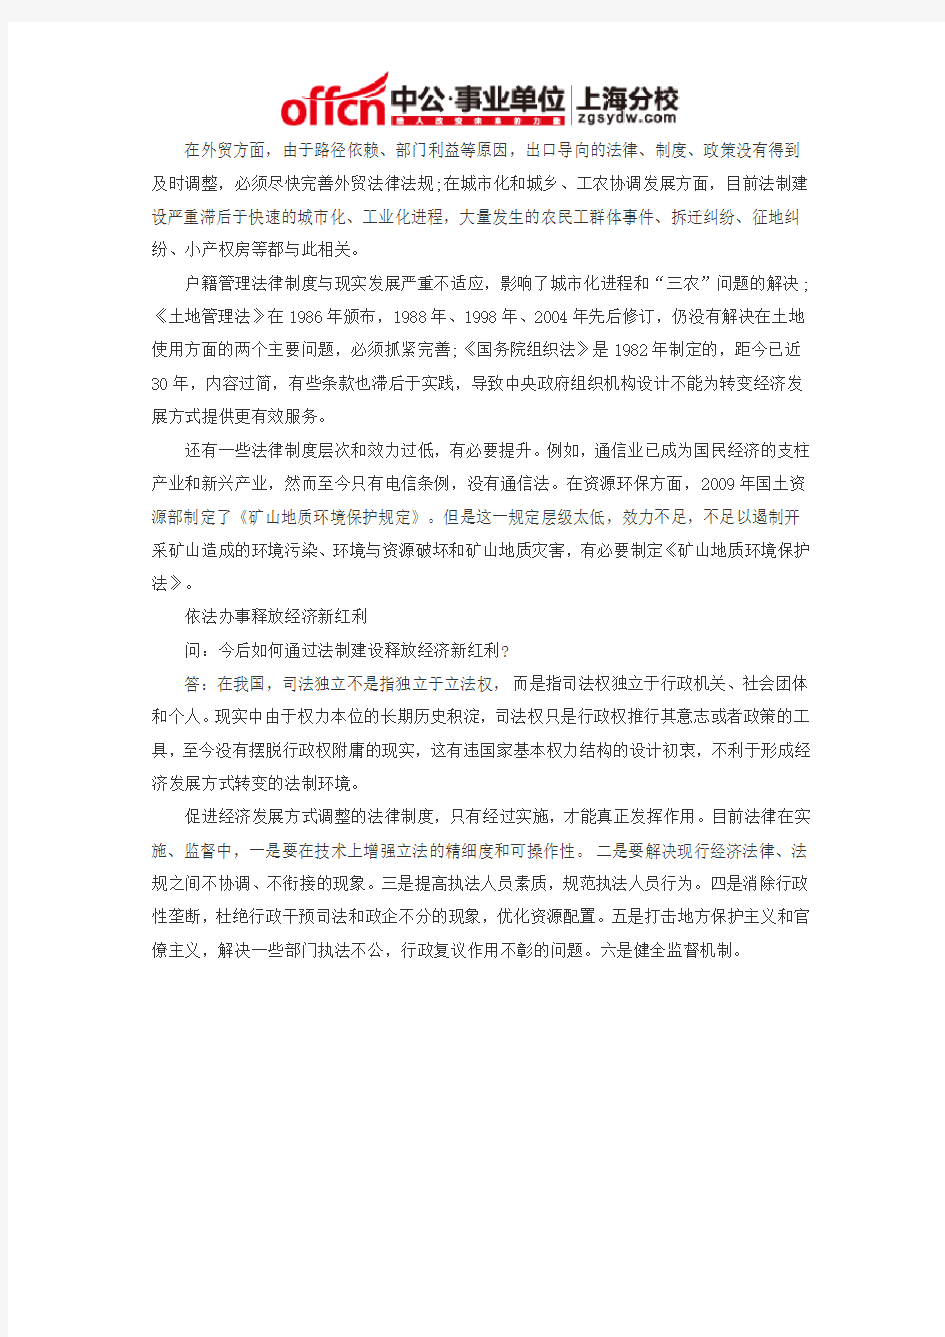 2014上海事业单位面试热点：依法治国带来红利 专家：“法治GDP”将大幅降低中国经济成本